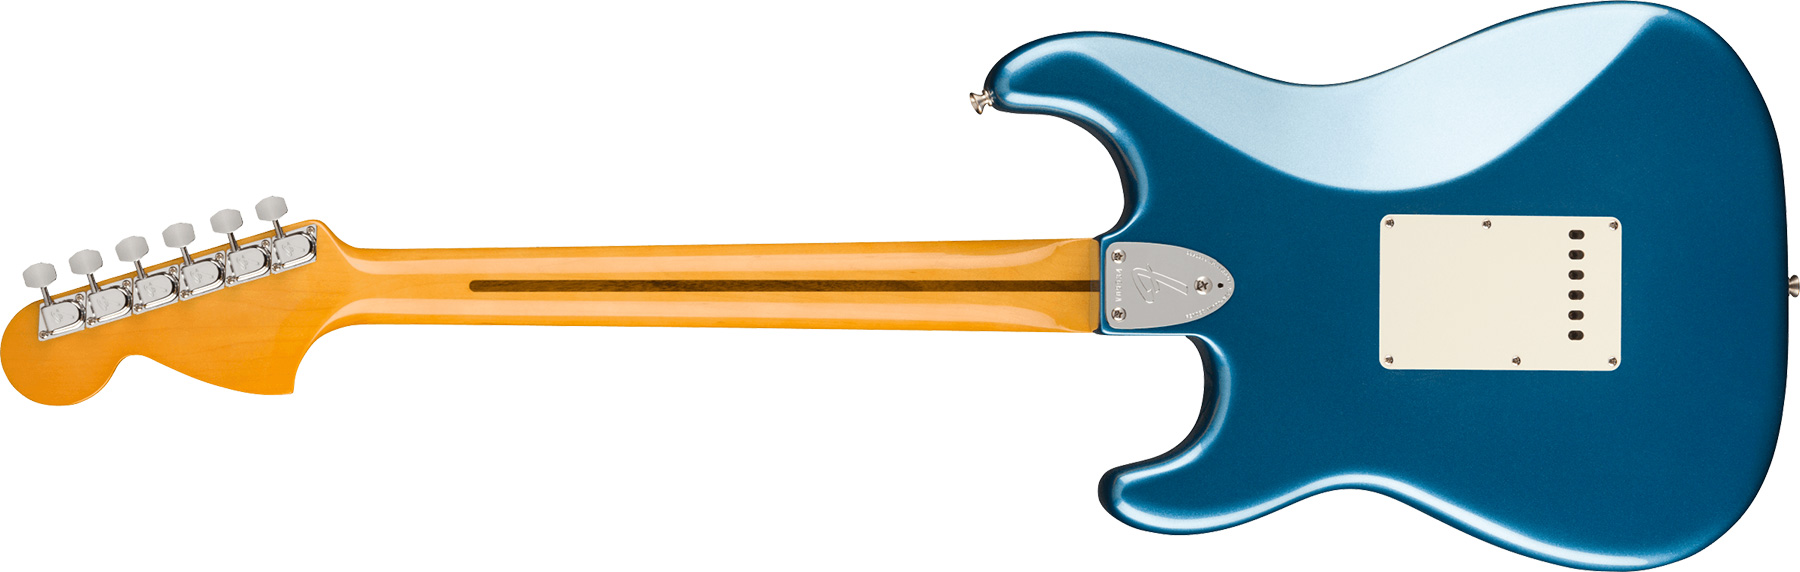 Fender Strat 1973 American Vintage Ii Usa 3s Trem Mn - Lake Placid Blue - Guitarra eléctrica con forma de str. - Variation 1